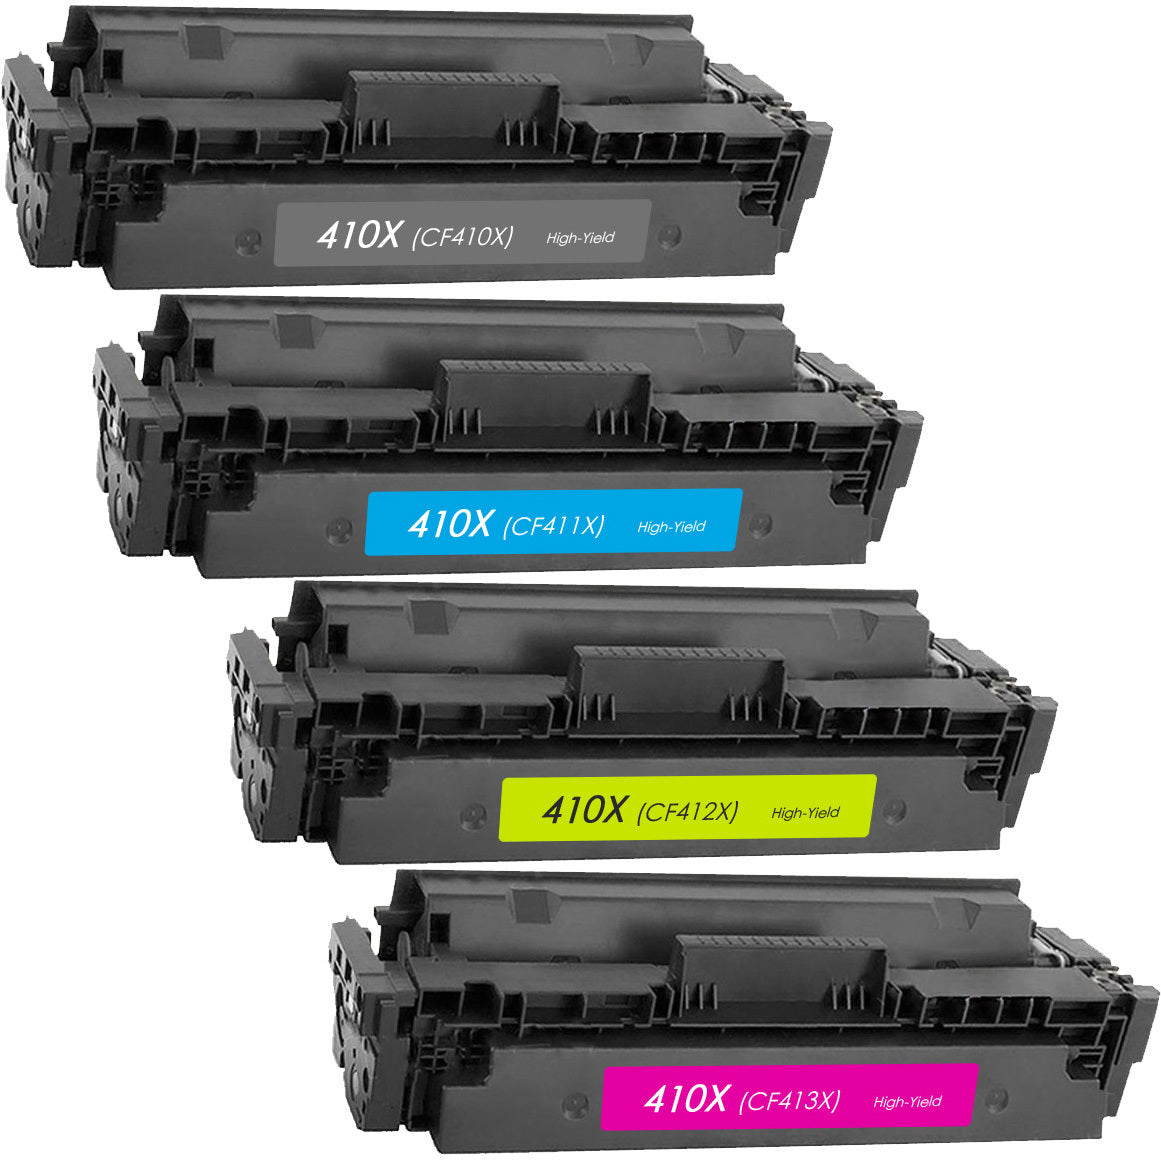 HP 410x - CF410X / CF411X / CF412X / CF413X COLLECTION